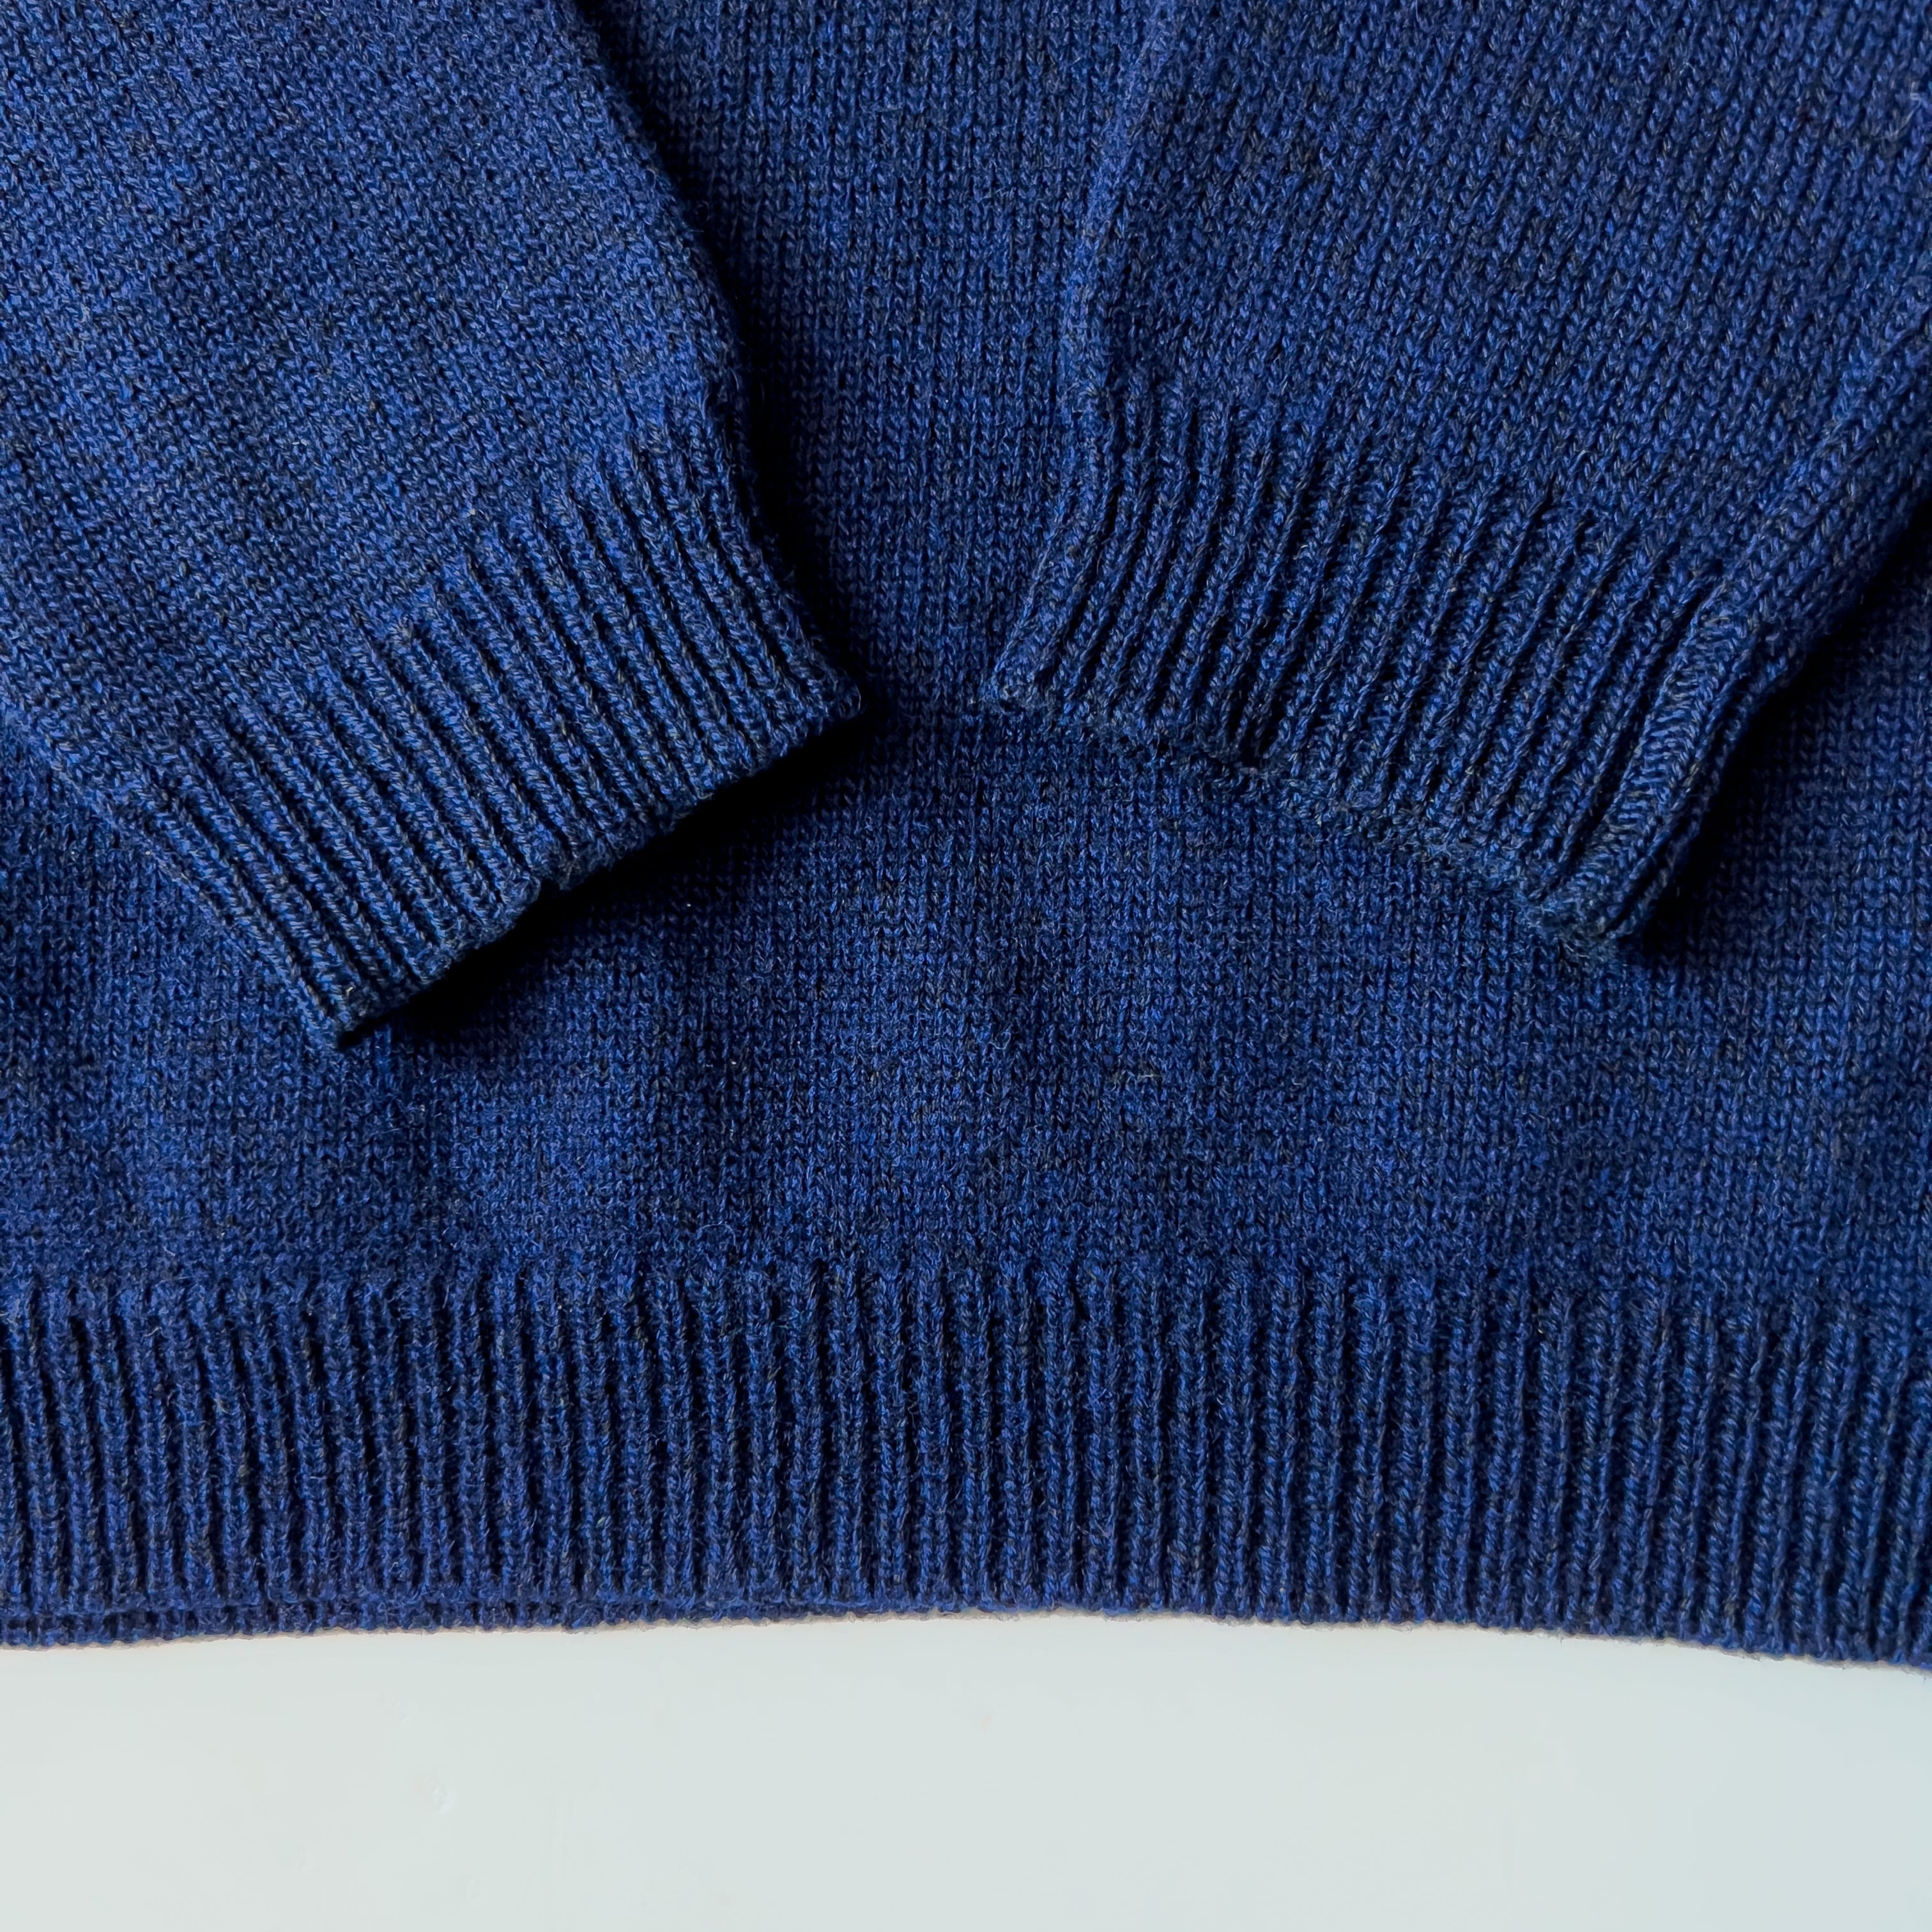 80s〜90s初期 A.P.C. made in France navy wool knit 90年代 フランス